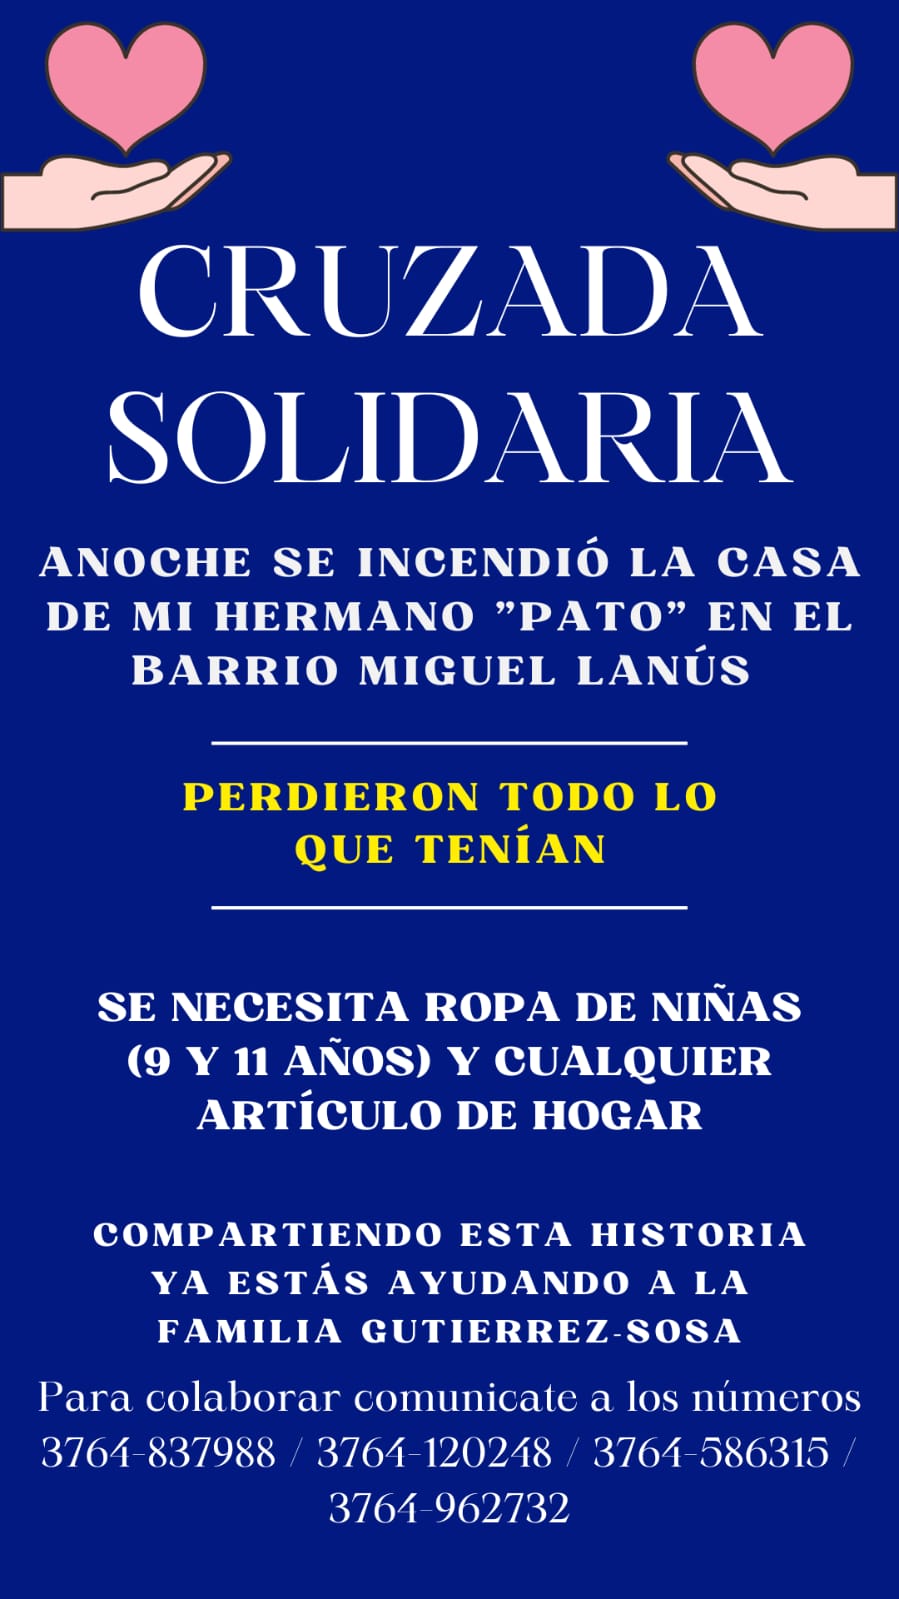 Tras incendio de una vivienda en Miguel Lanús, inician una campaña solidaria para la familia afectada imagen-2